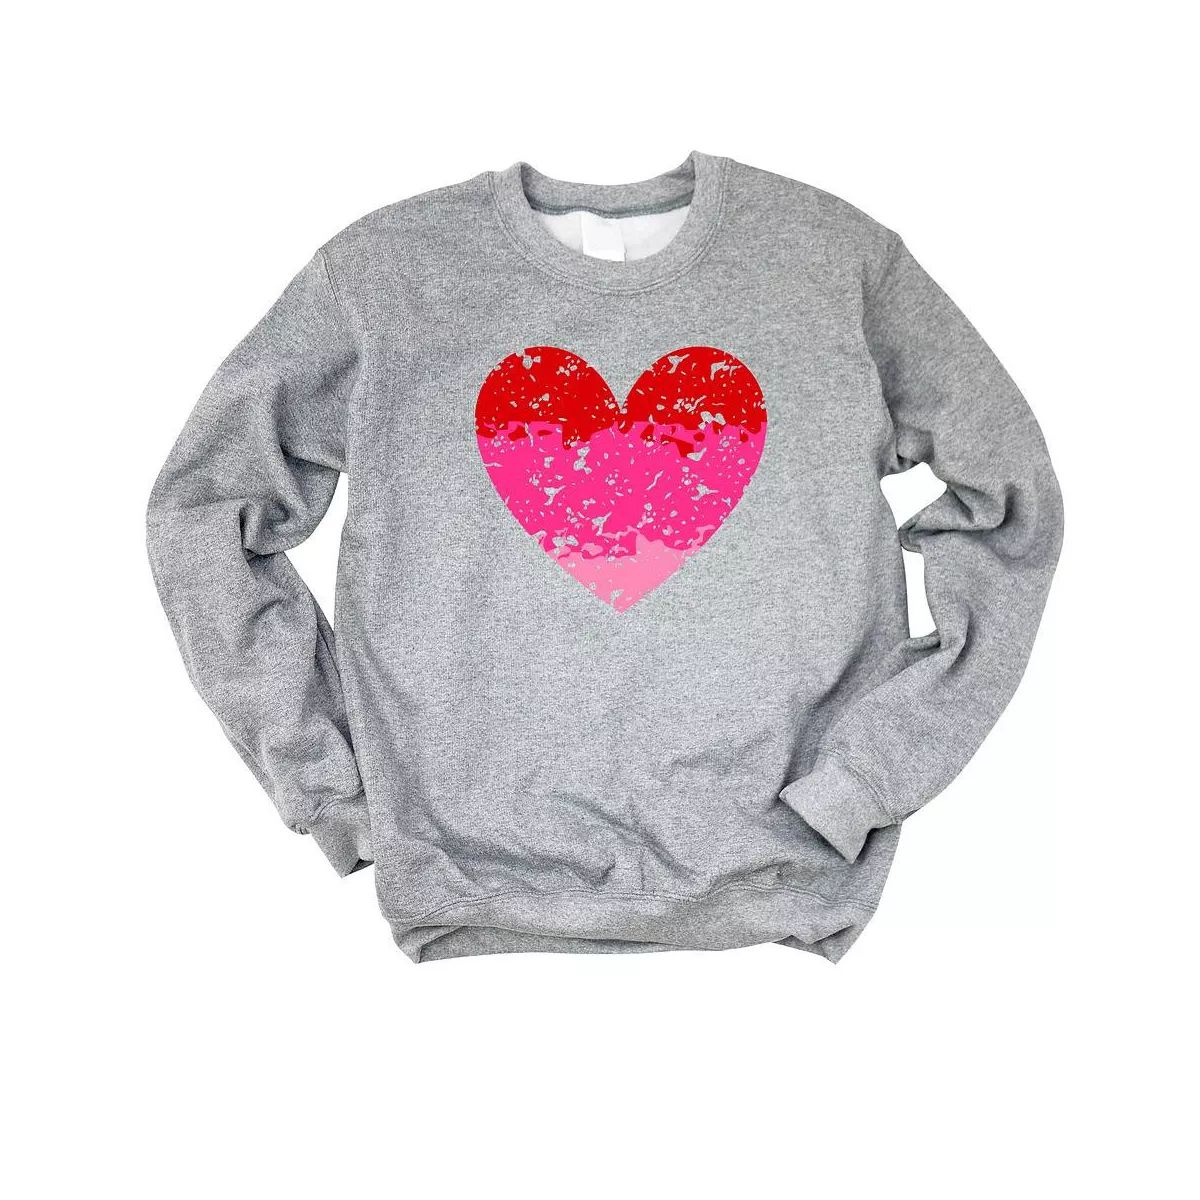 Simply Sage Market Women's Graphic Sweatshirt Heart Ombre | Target